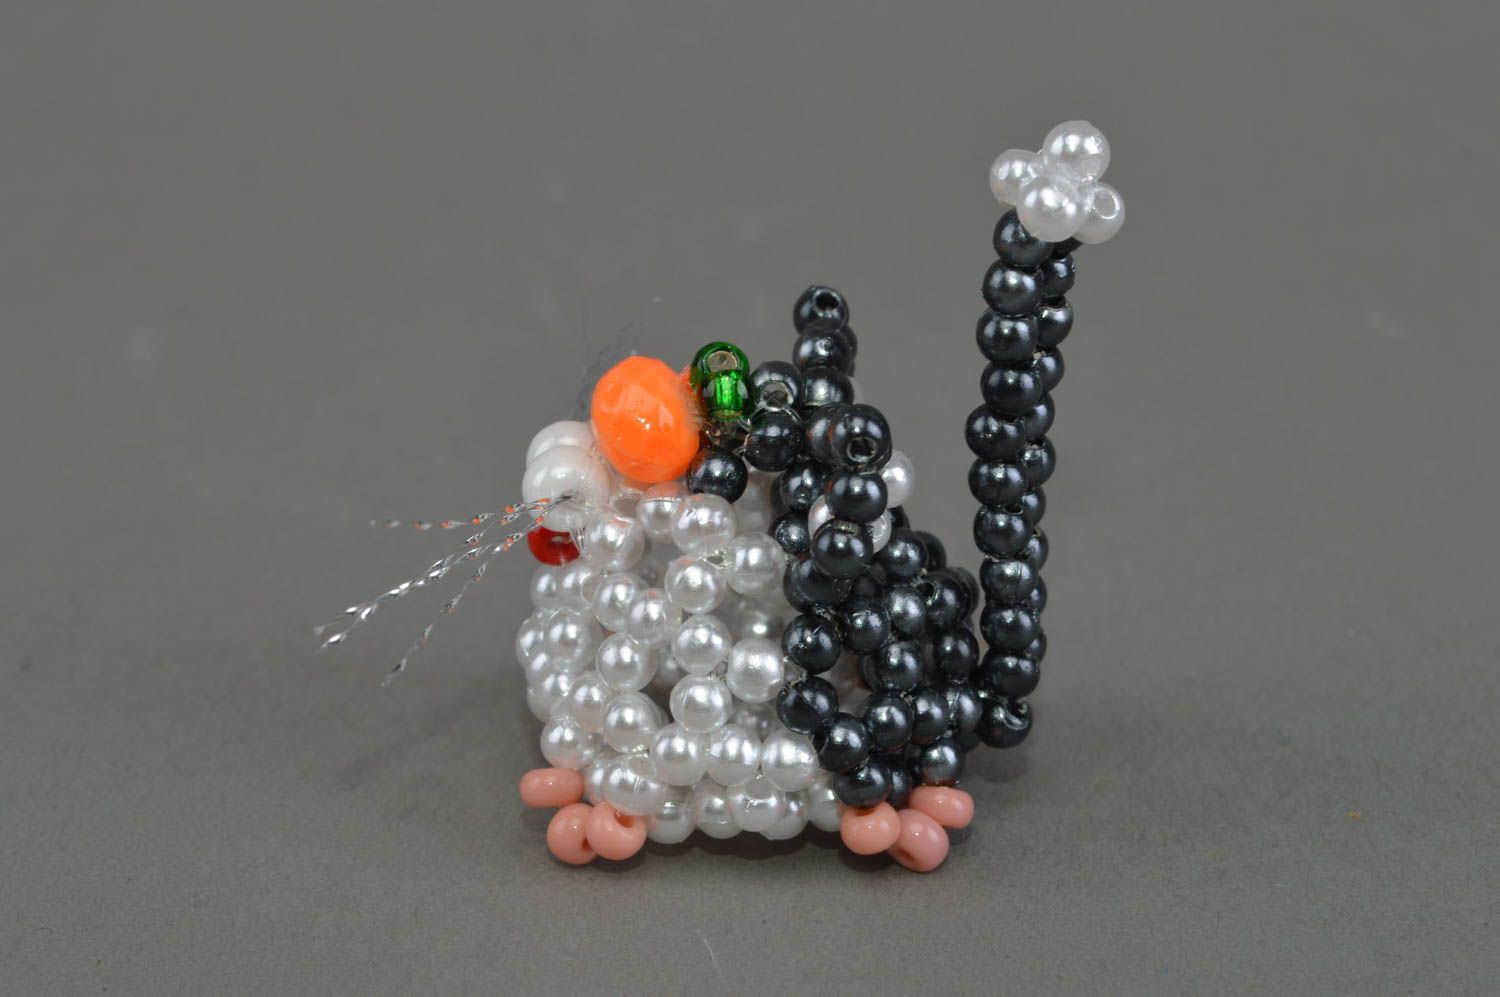 Katze Mini Figurine aus Glasperlen für Interieur künstlerisch toll grell schön foto 2